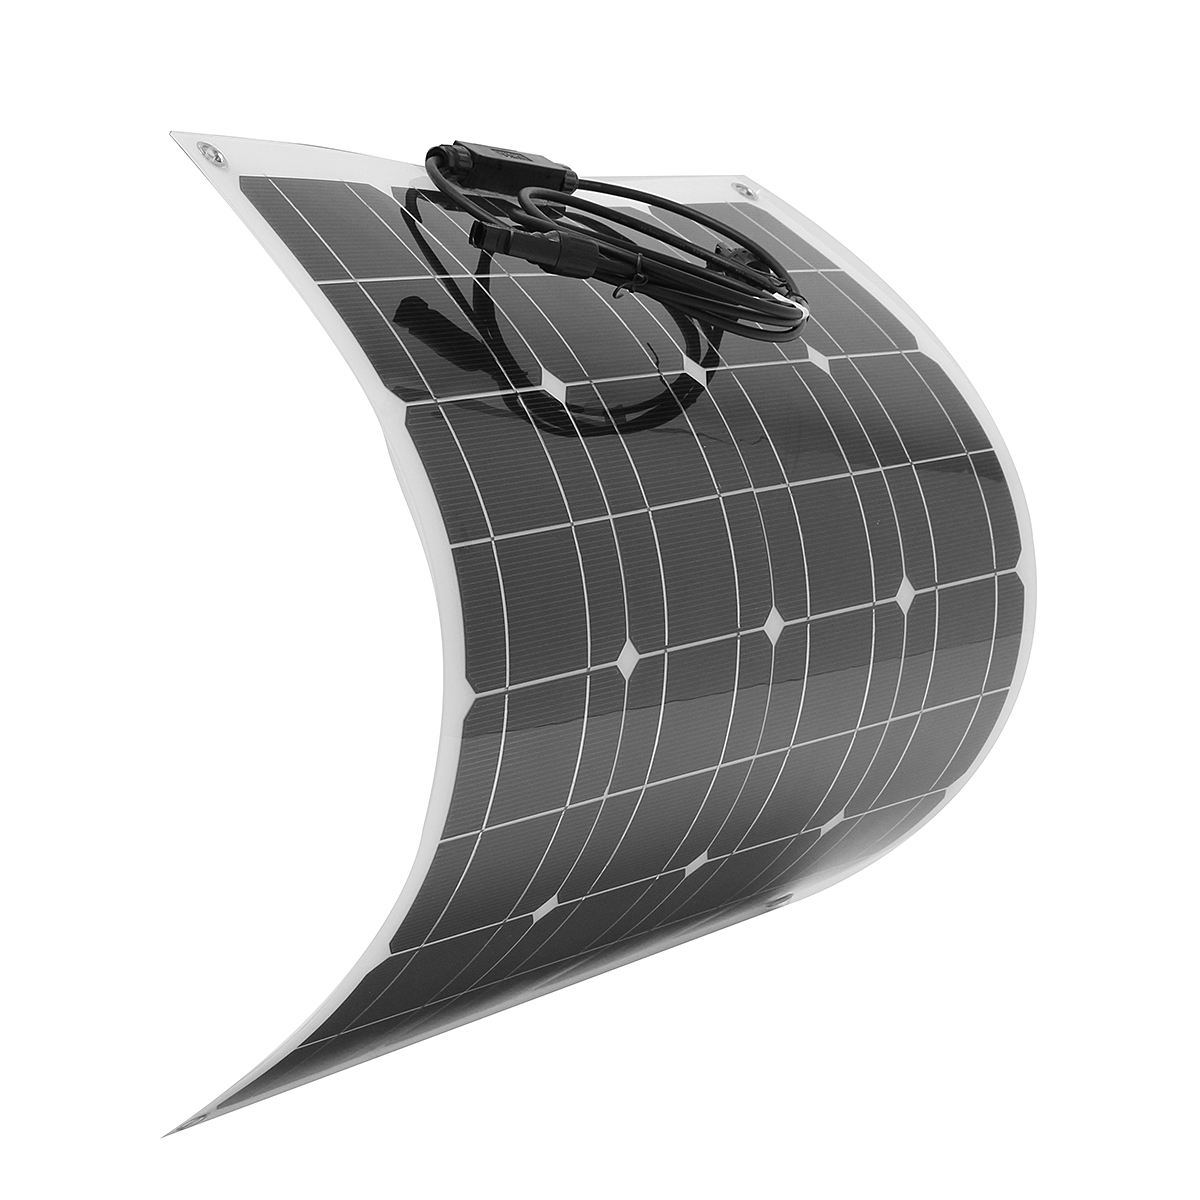 

60W 12V Солнечная Панельный гибкий полугибкий Солнечная Батарея Зарядное устройство с MC4 Для RV Авто мотоцикл Лодка